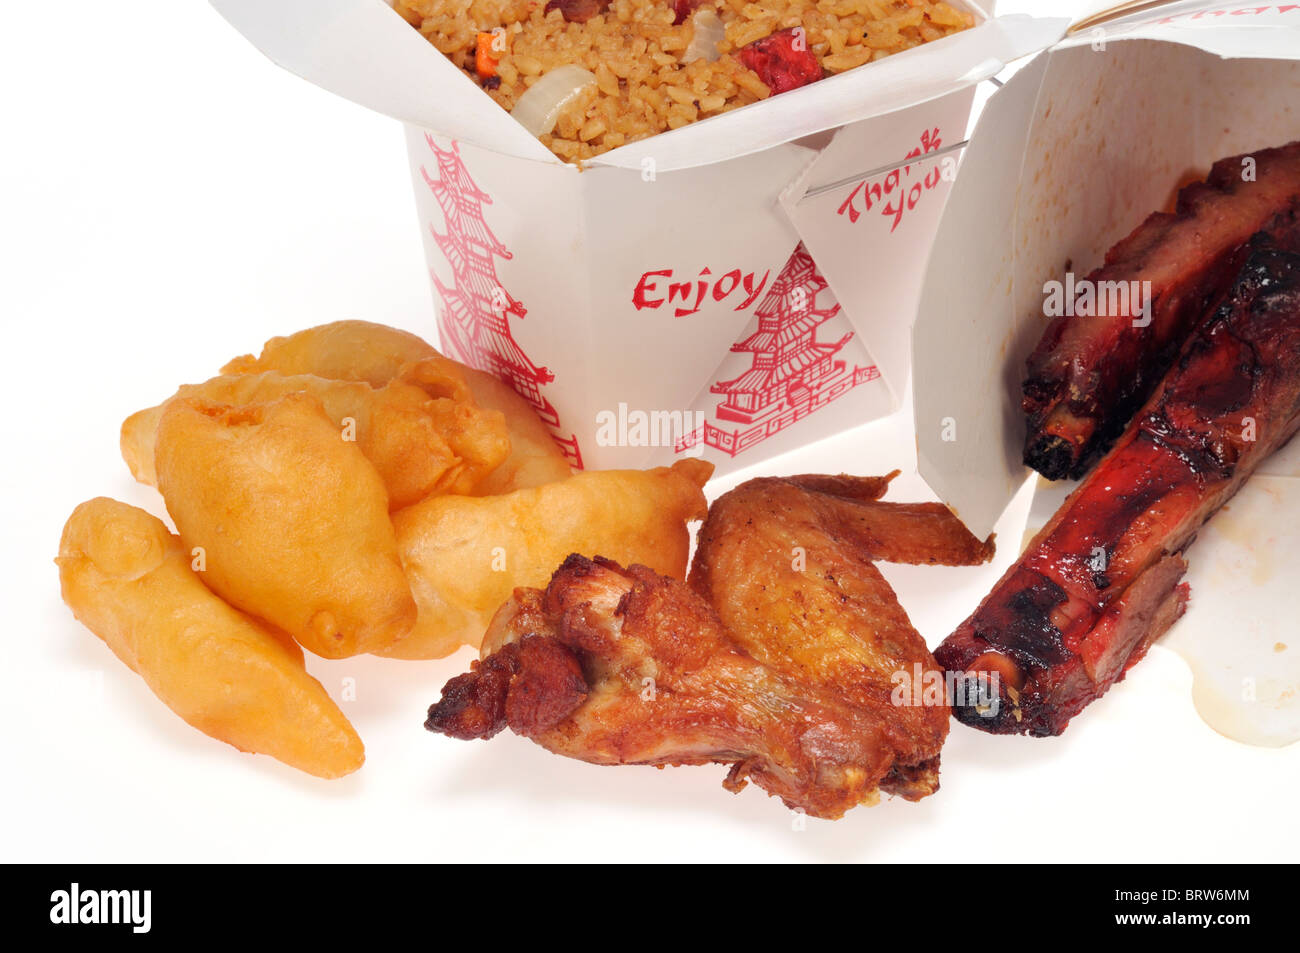 Comida china para llevar comida cajas o cartones de cerdo fritos arroz con pollo dedos, alas de pollo y costillas de cerdo sobre fondo blanco. Foto de stock